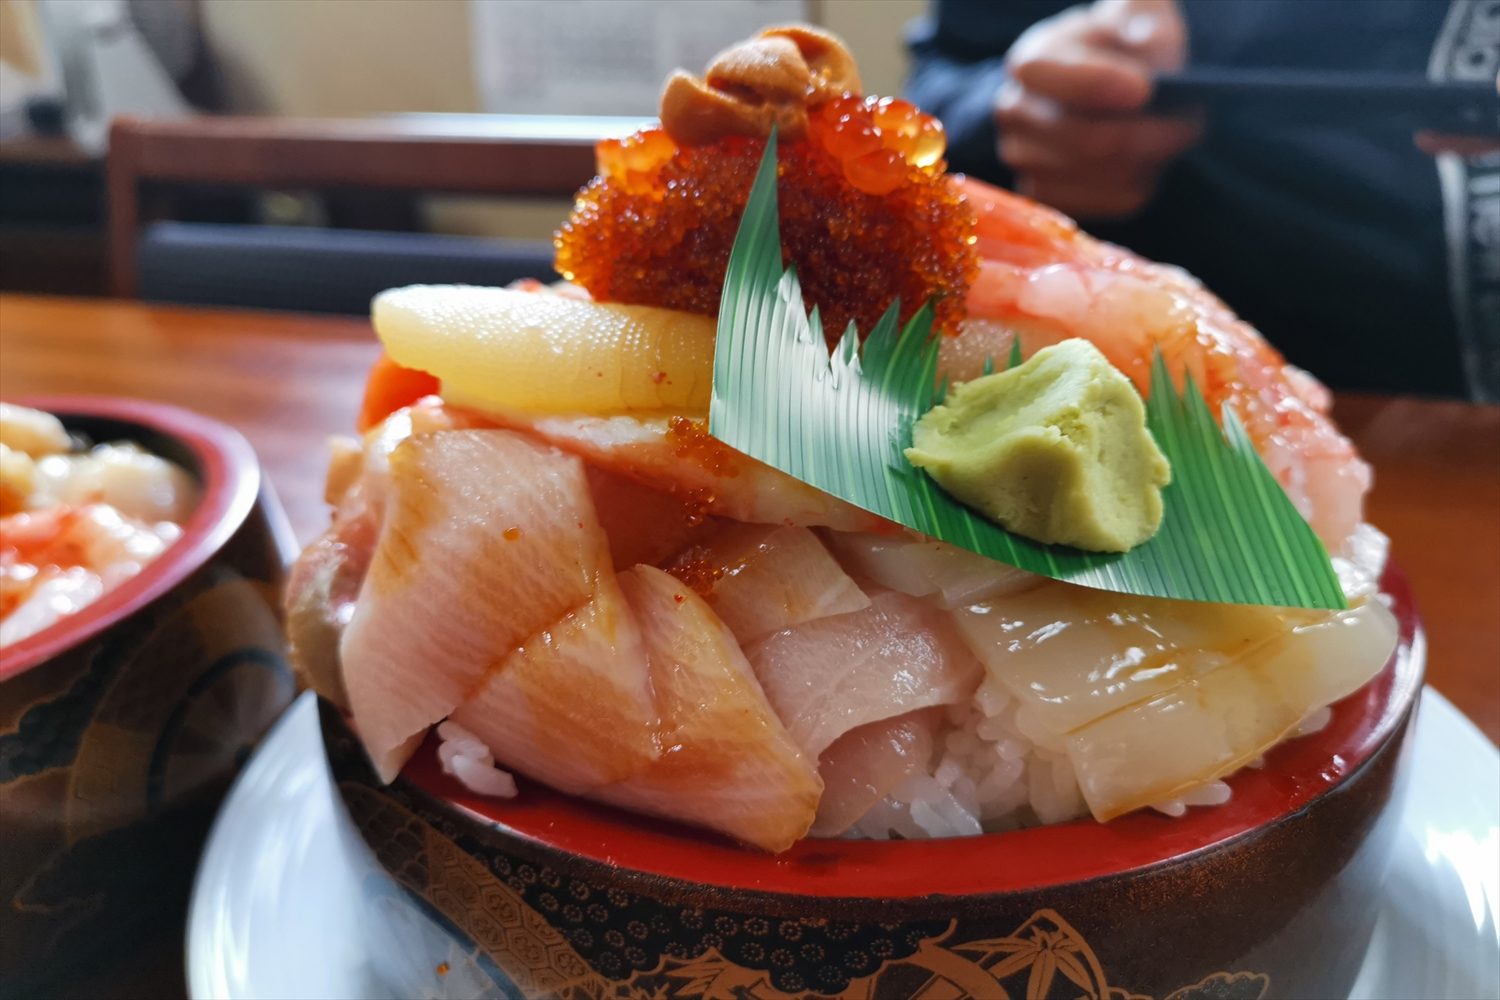 デカ盛りなのに激ウマ 北海道 寿司のまつくら ジャンボ生チラシがスゴい ニュースサイトしらべぇ